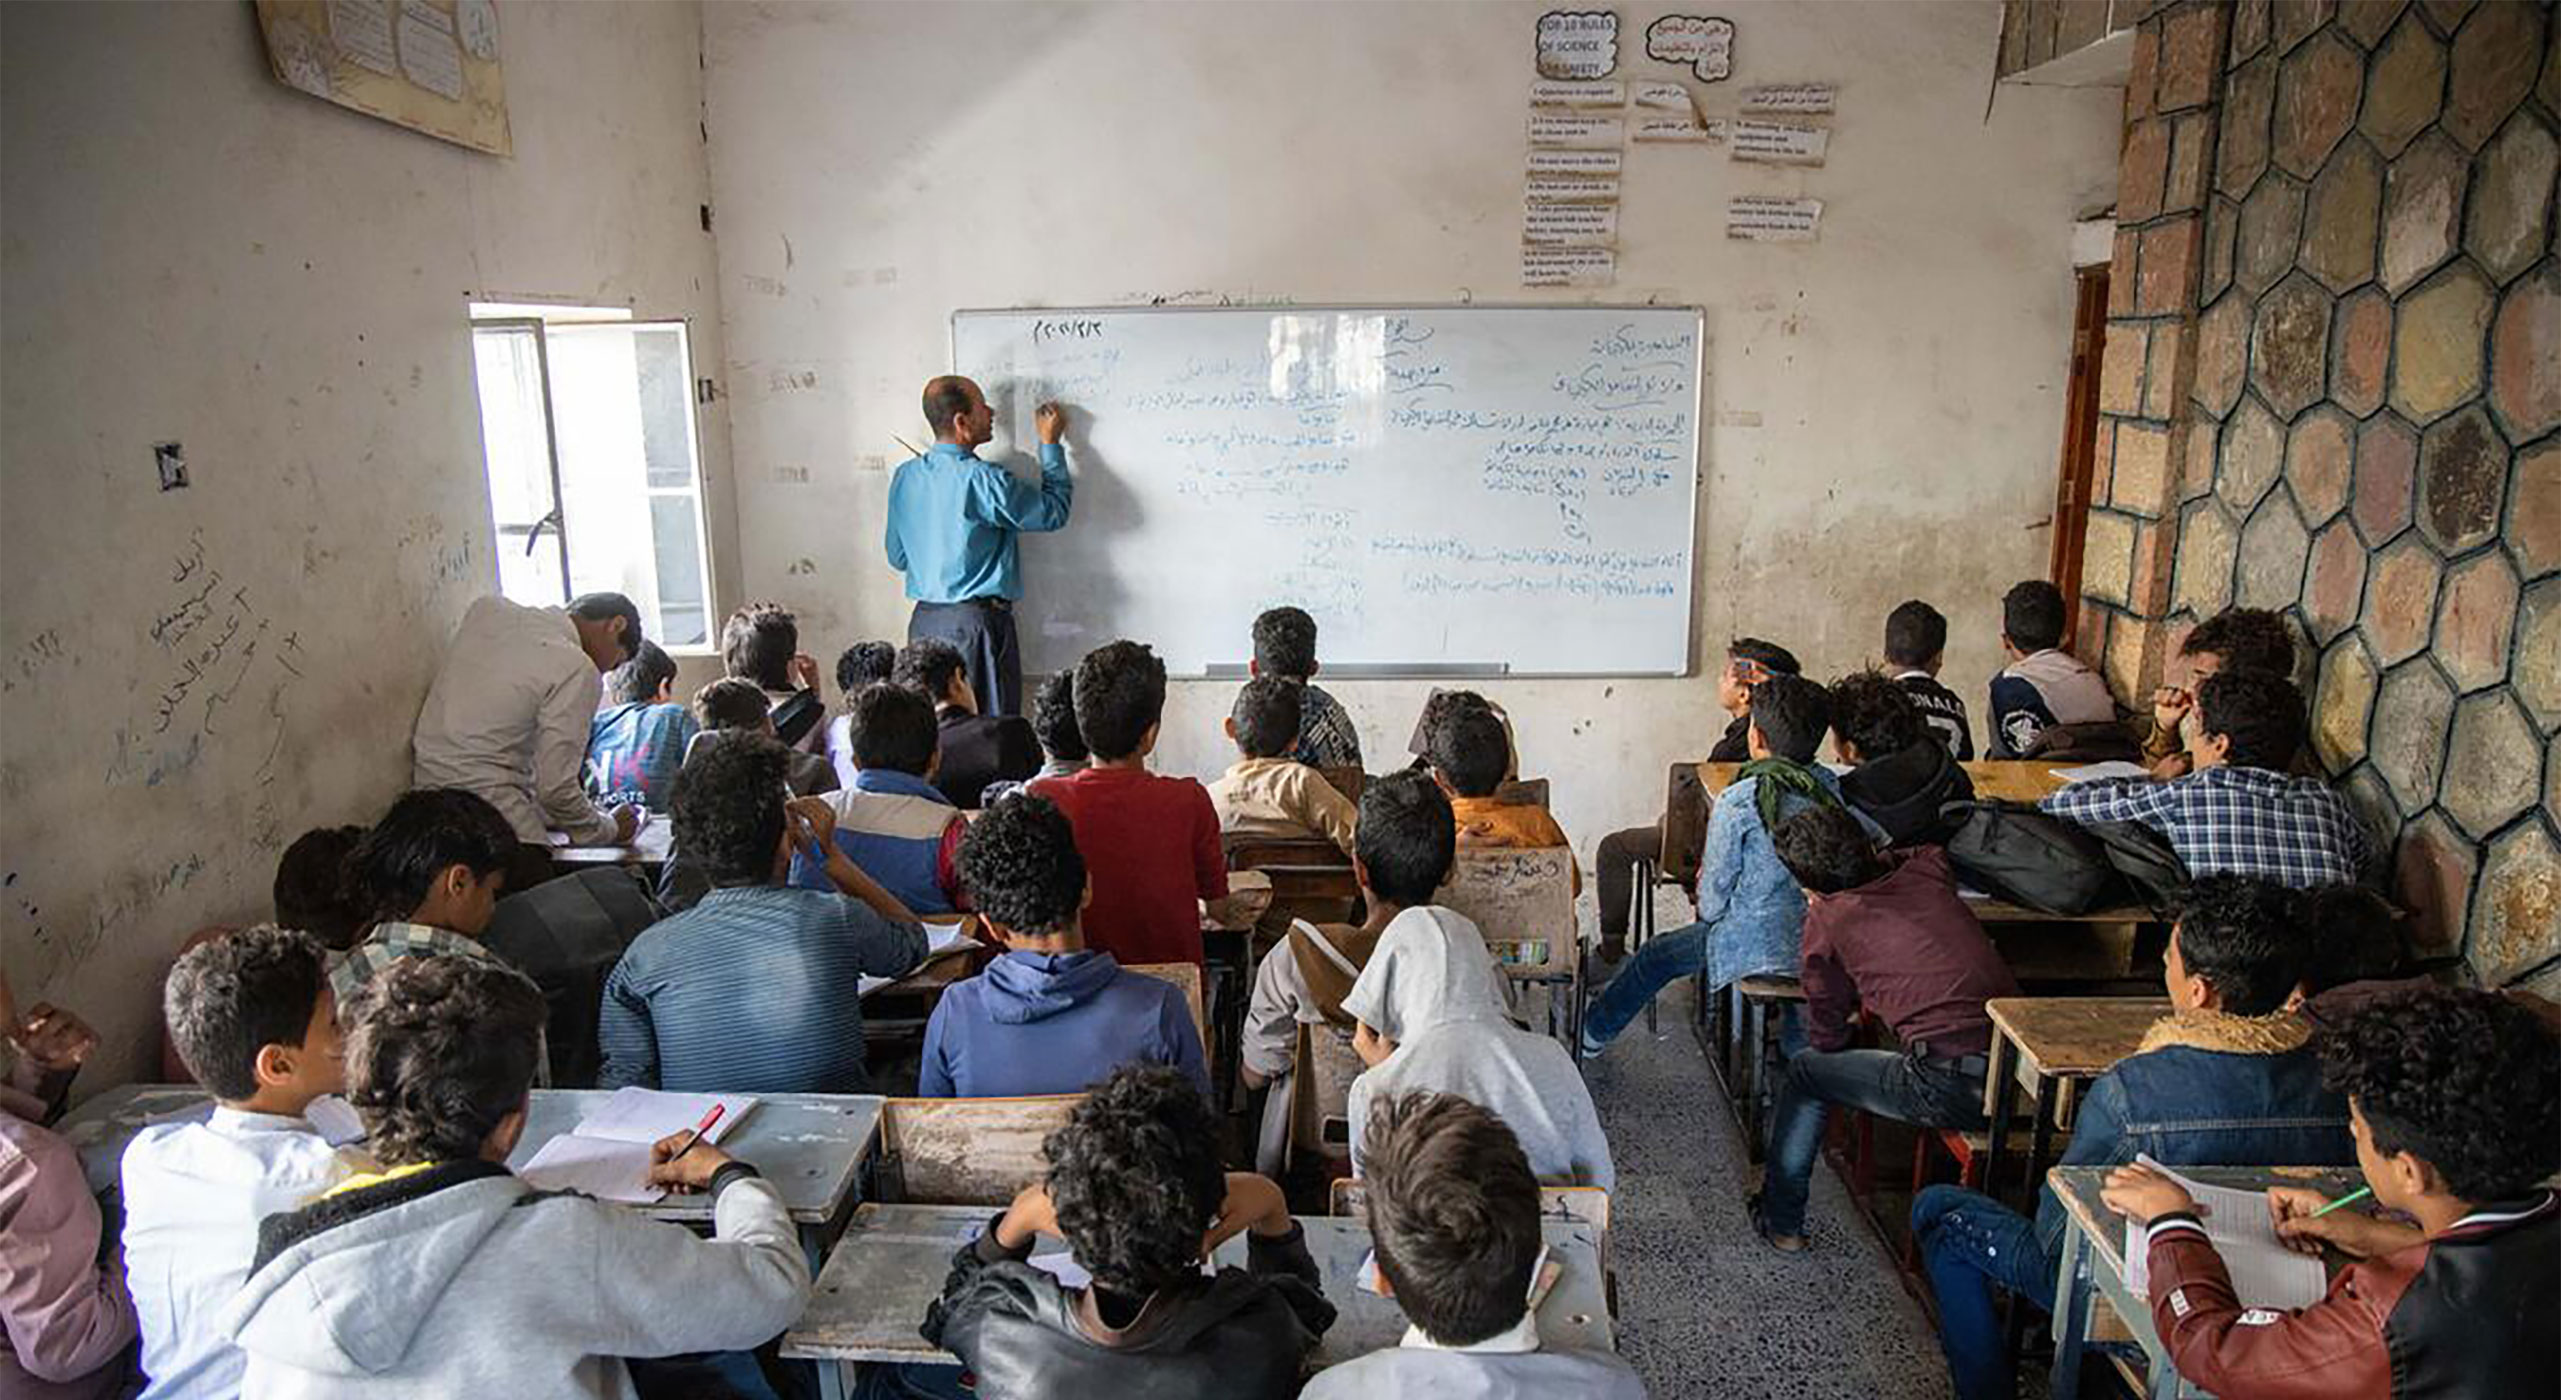 Schule im Jemen, die Isaac* besucht. © Albaraa Mansoor / Save the Children